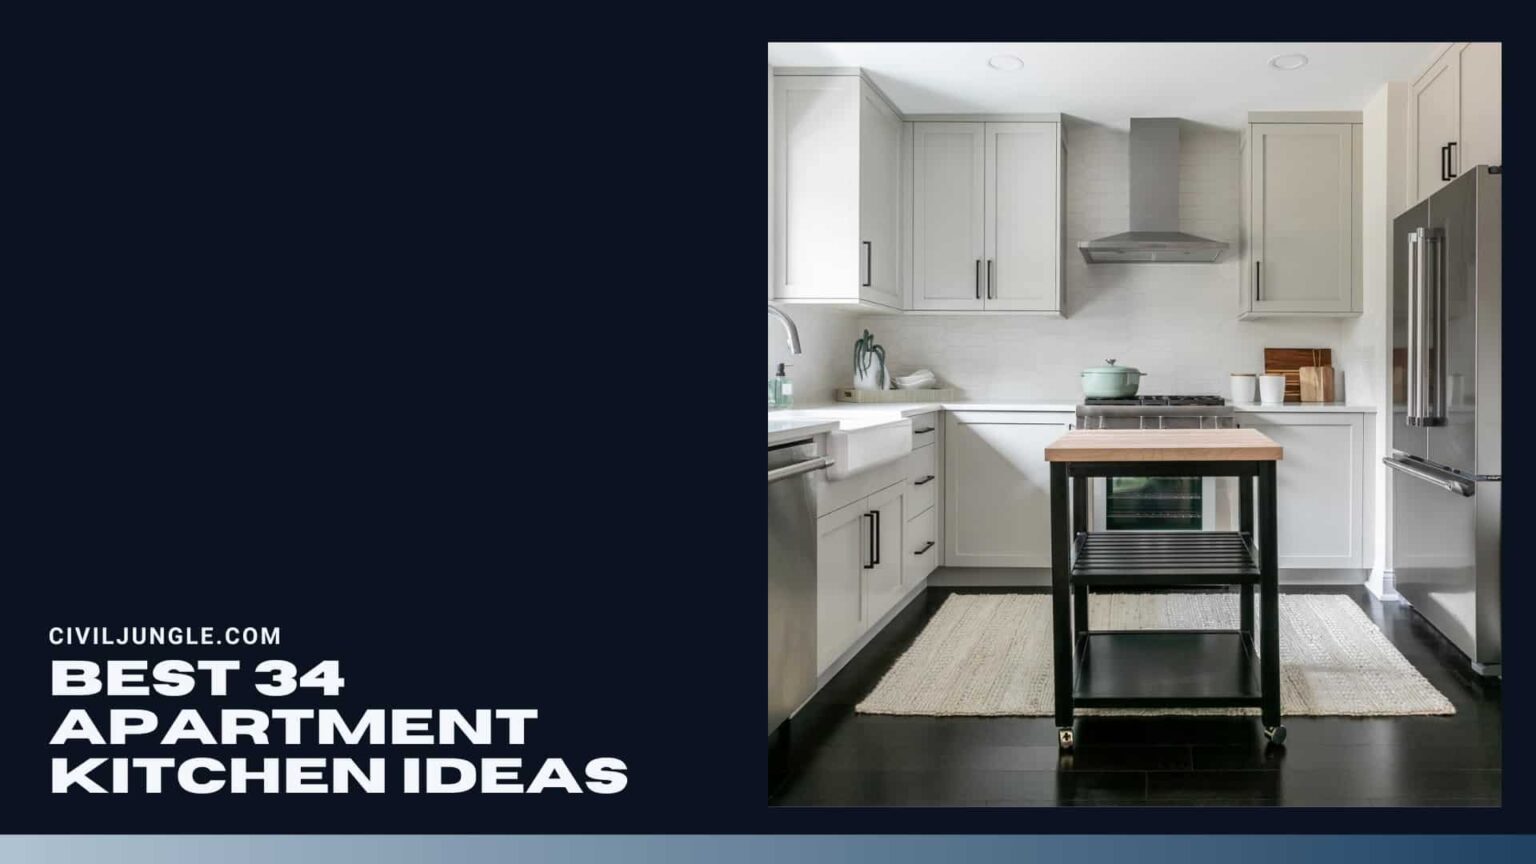 Best 34 Apartment Kitchen Ideas 1536x864 